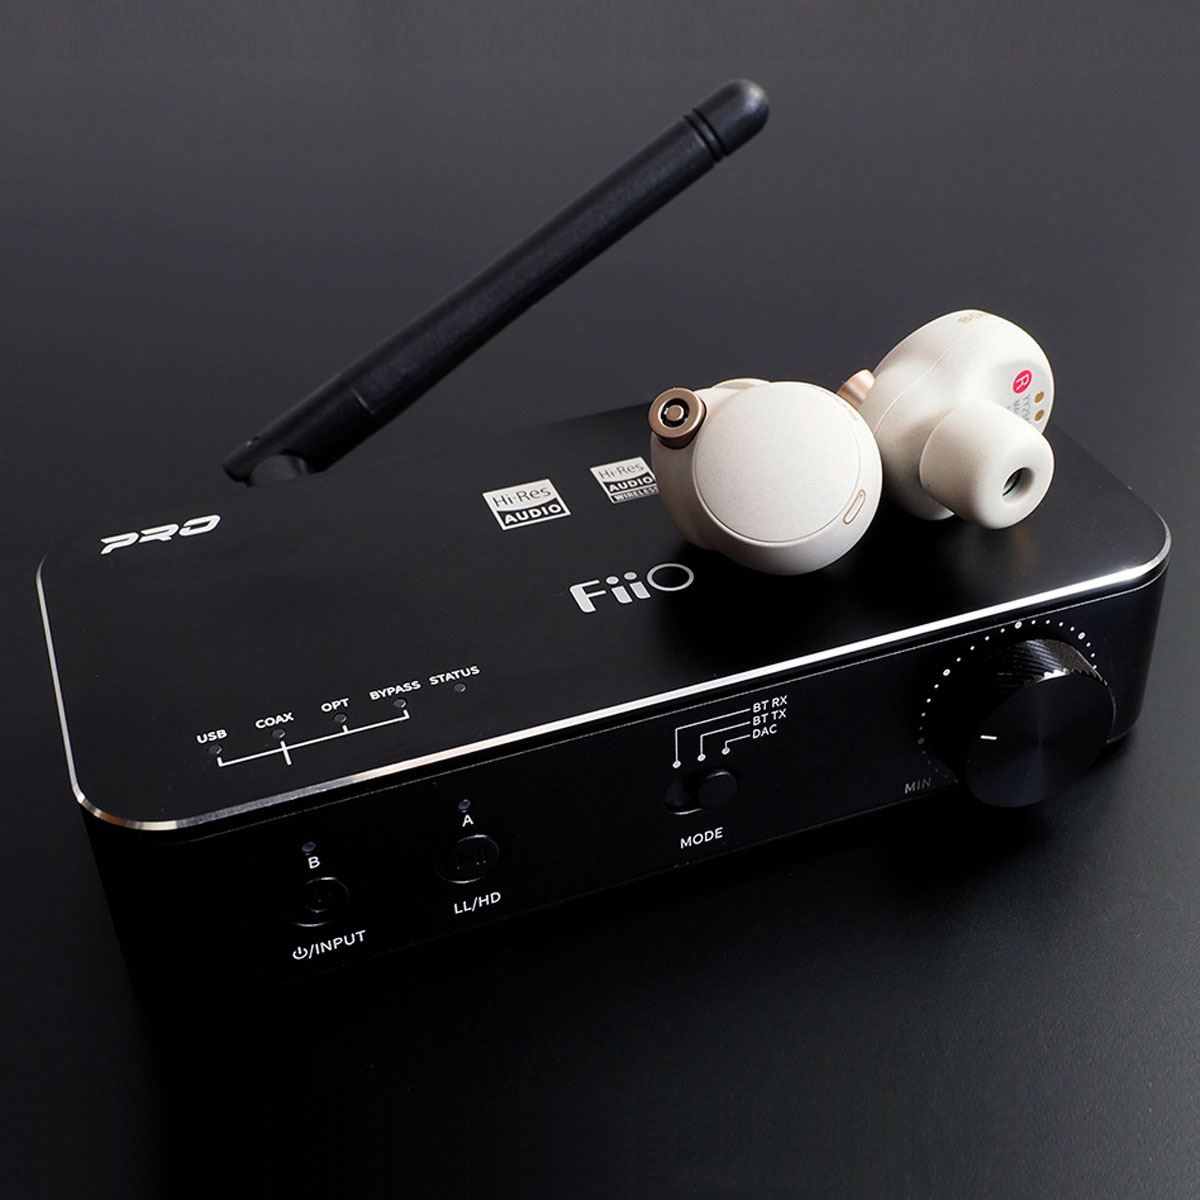 さまざまな機器をワイヤレス化できるFiiO「BTA30 Pro」でハイレゾ音楽